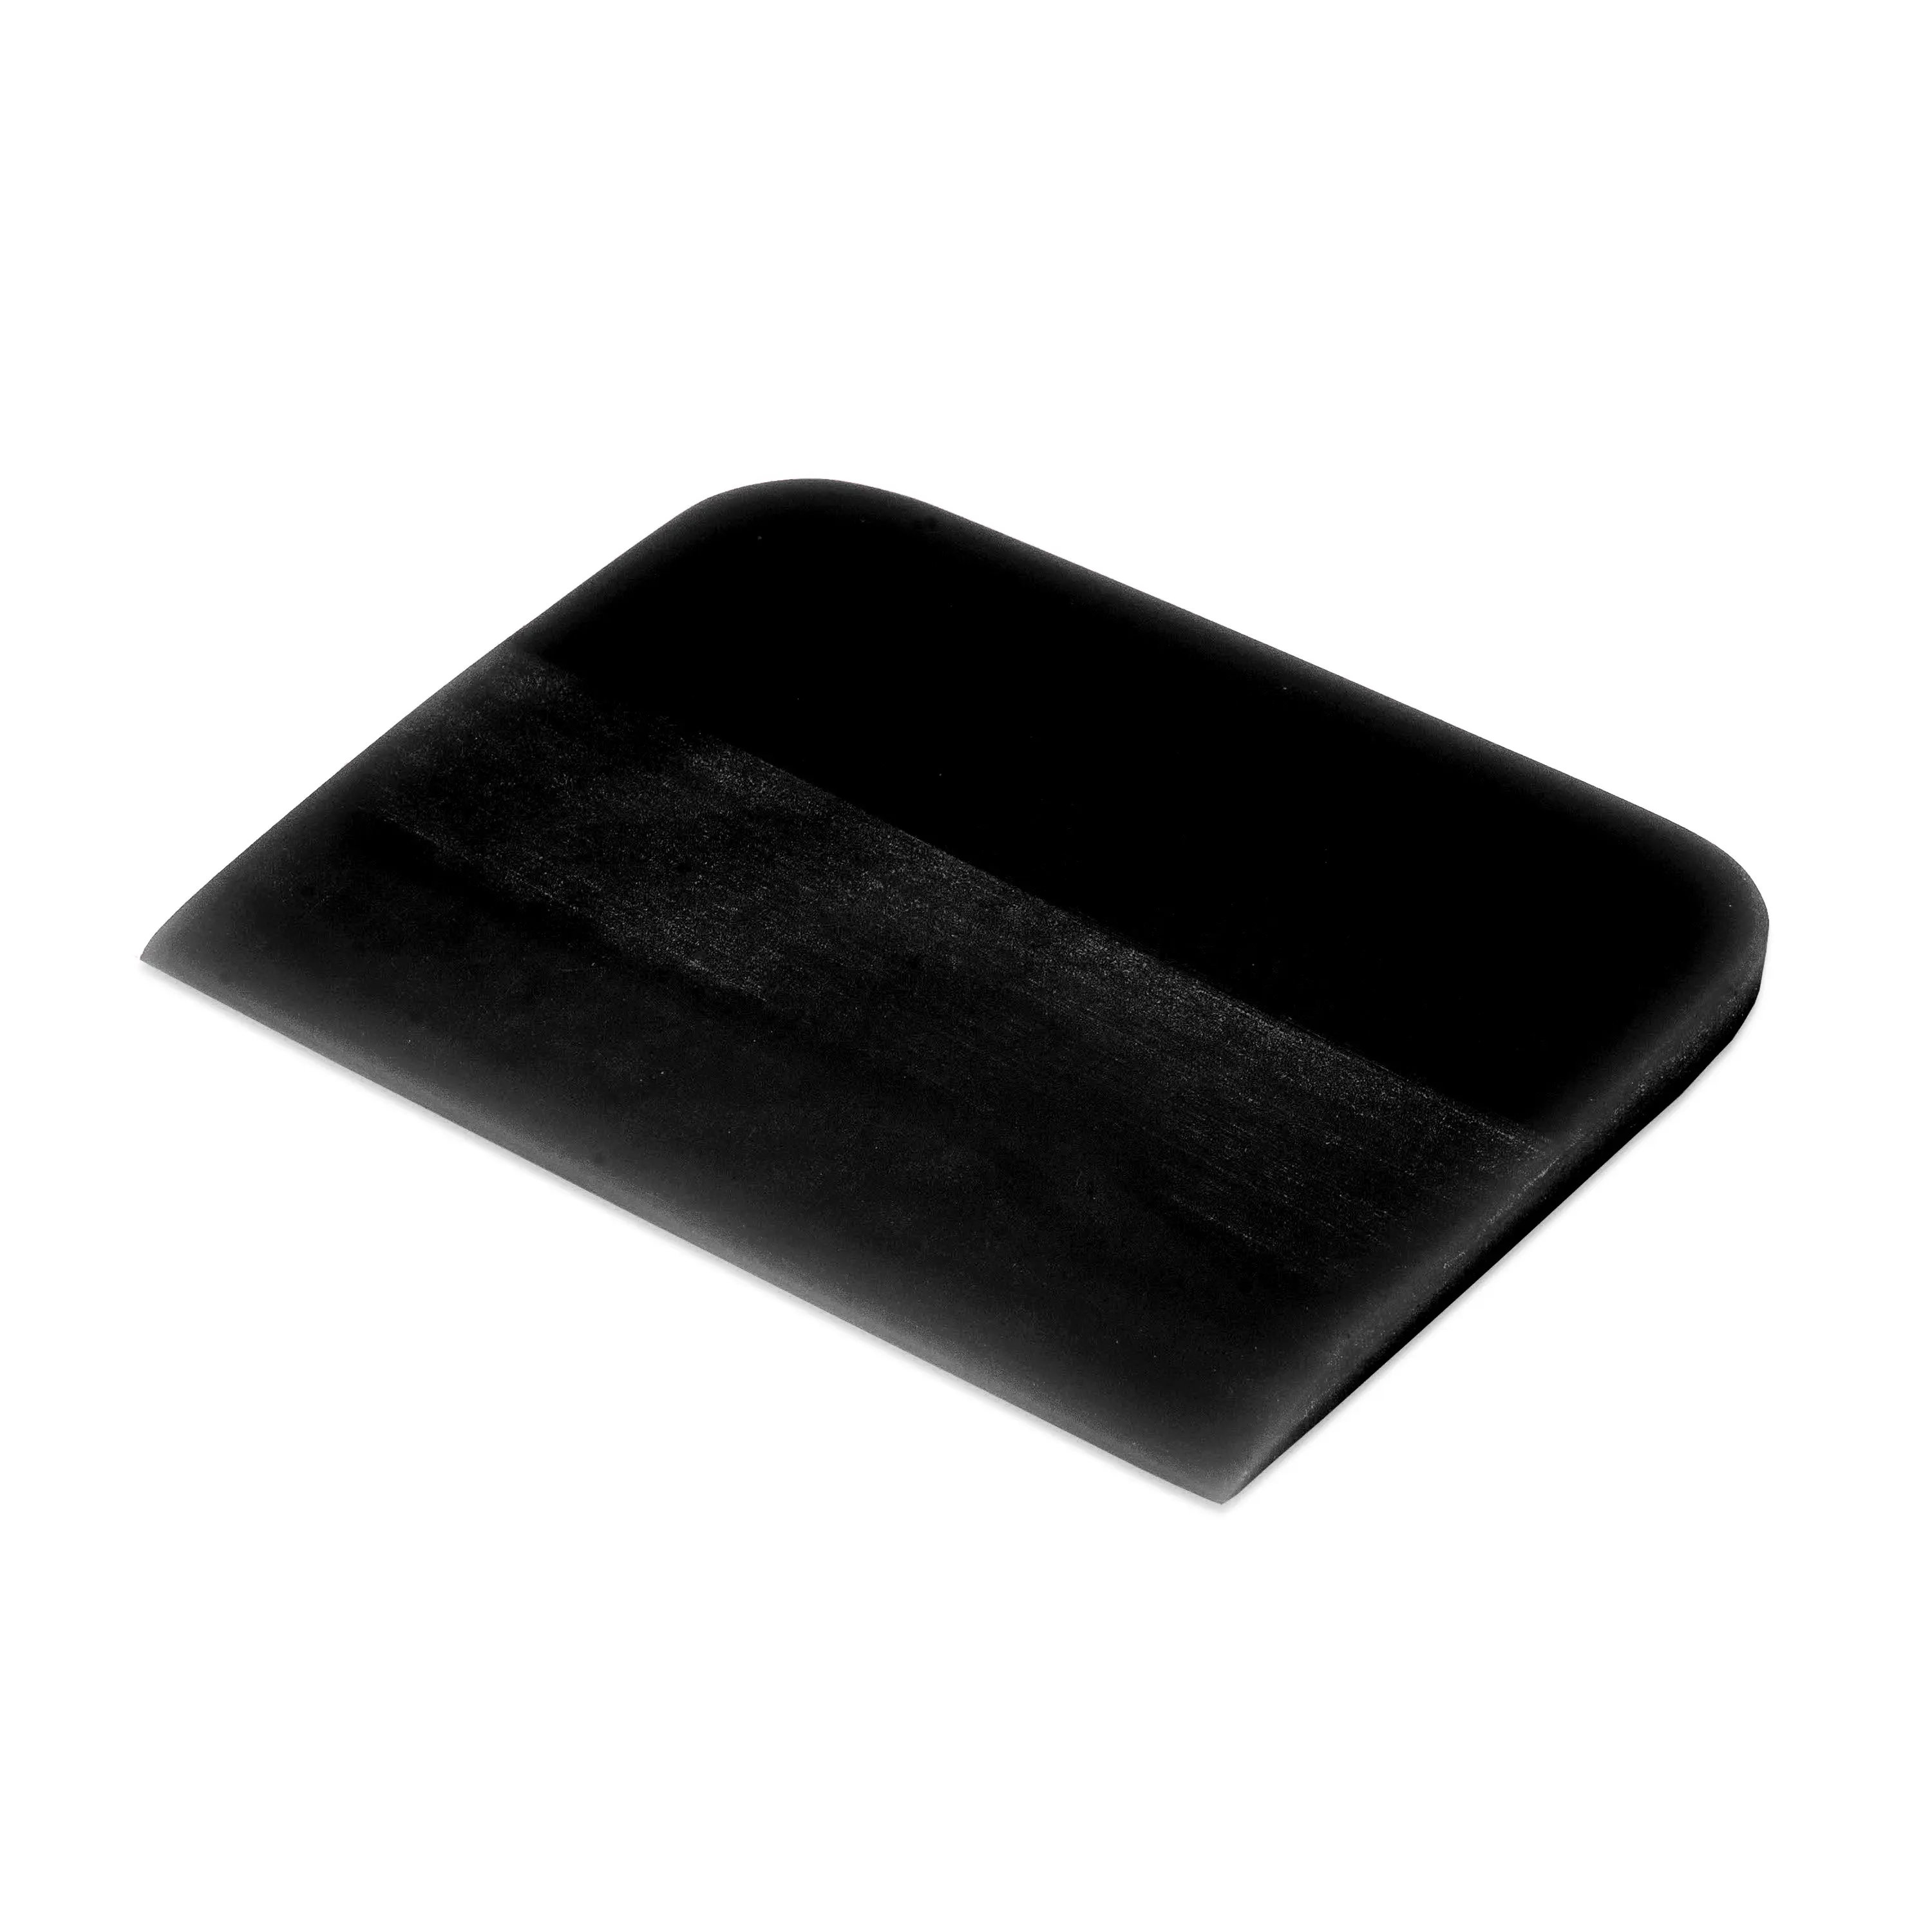 Polyurethane black film squeeging tool Grim Slider, 0.6x12x7.5 cm